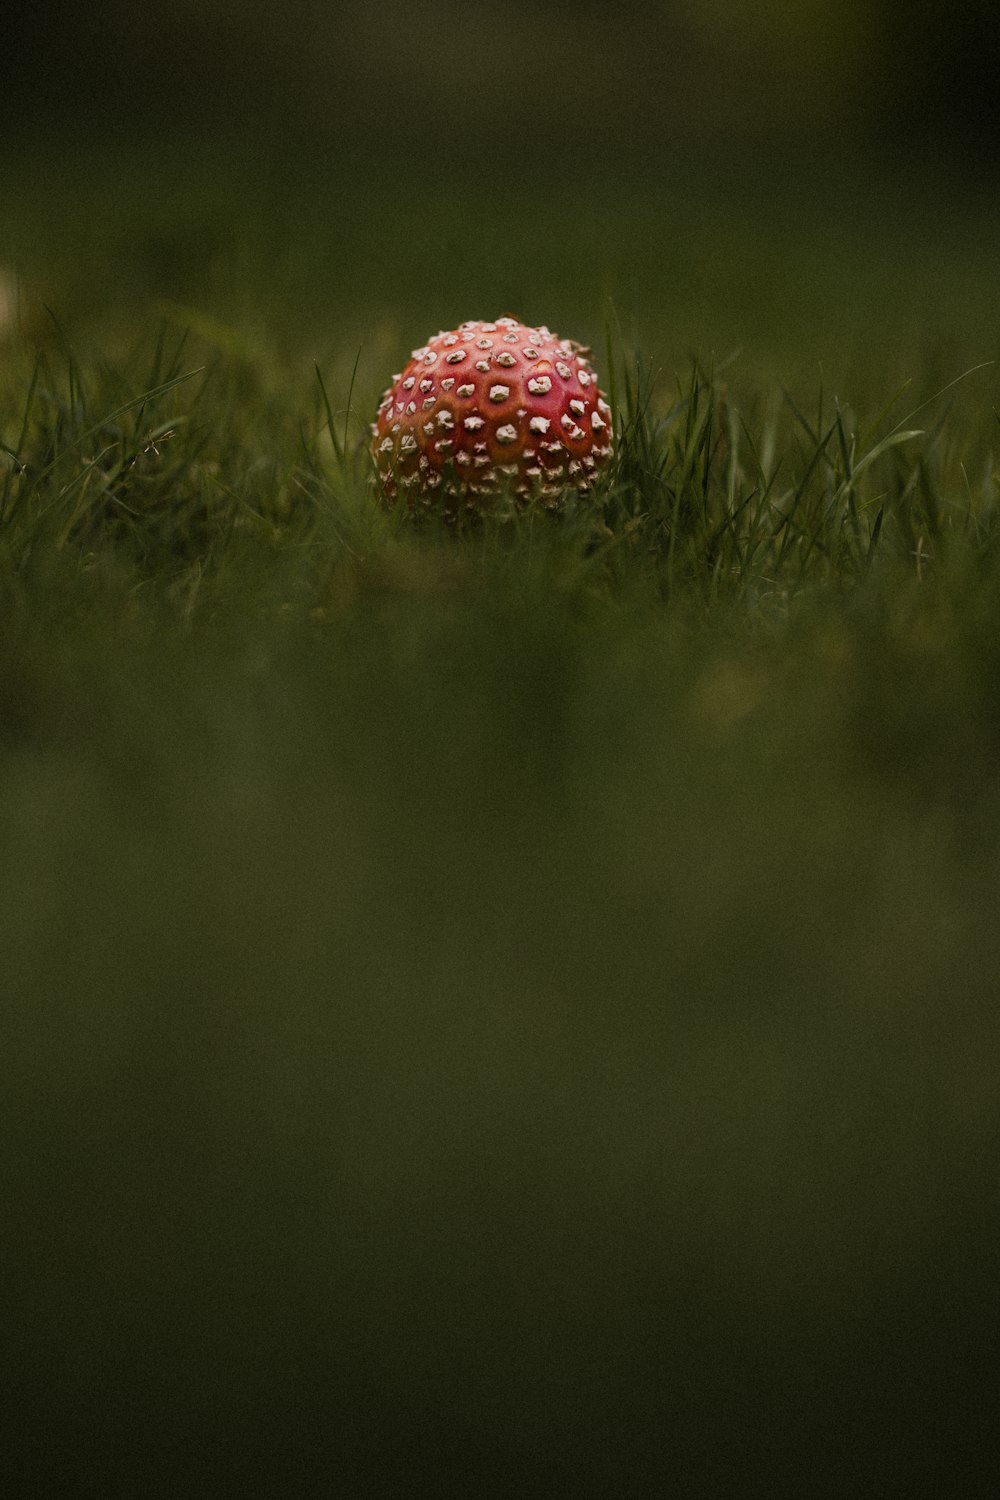 cogumelo de bolinhas vermelhas e brancas no campo de grama verde